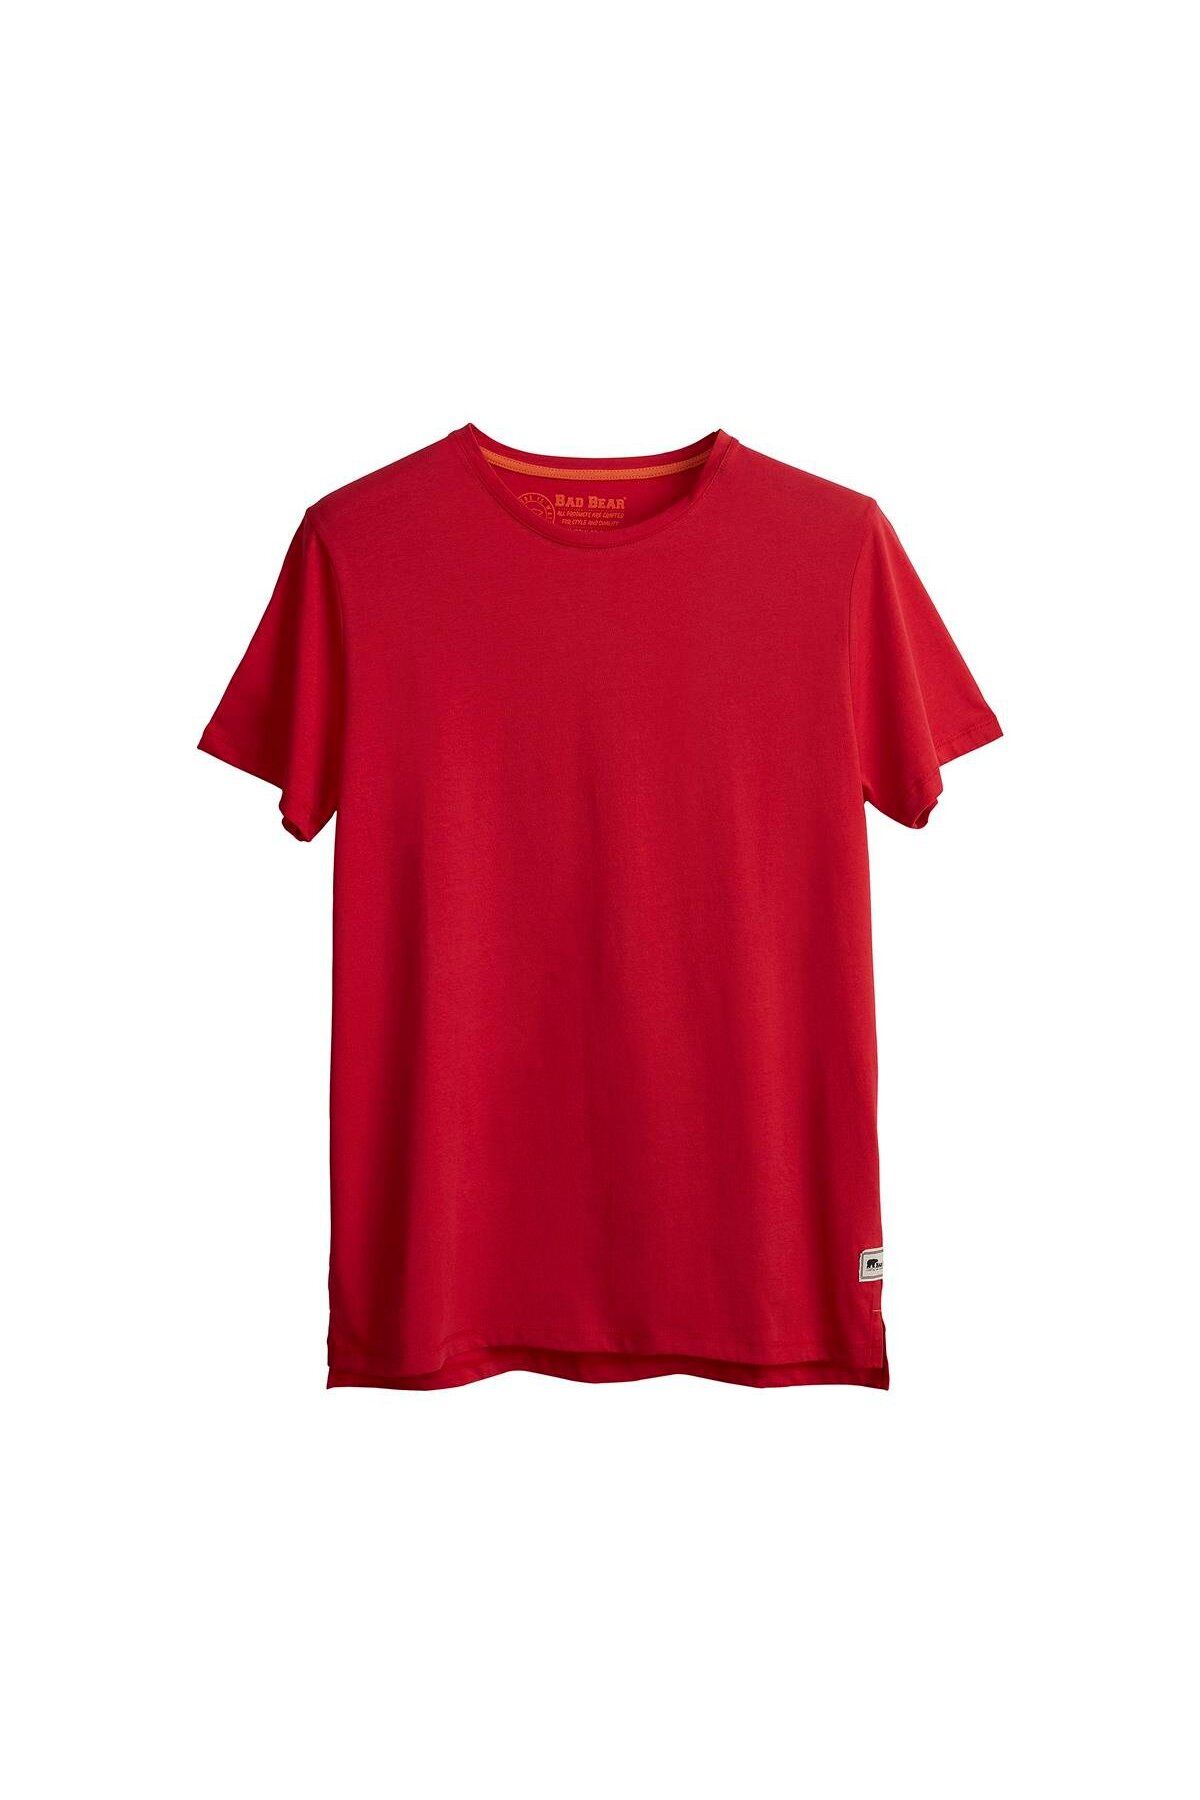 Bad Bear Major T-shirt Crimson Red Kırmızı Basic Erkek Tişört